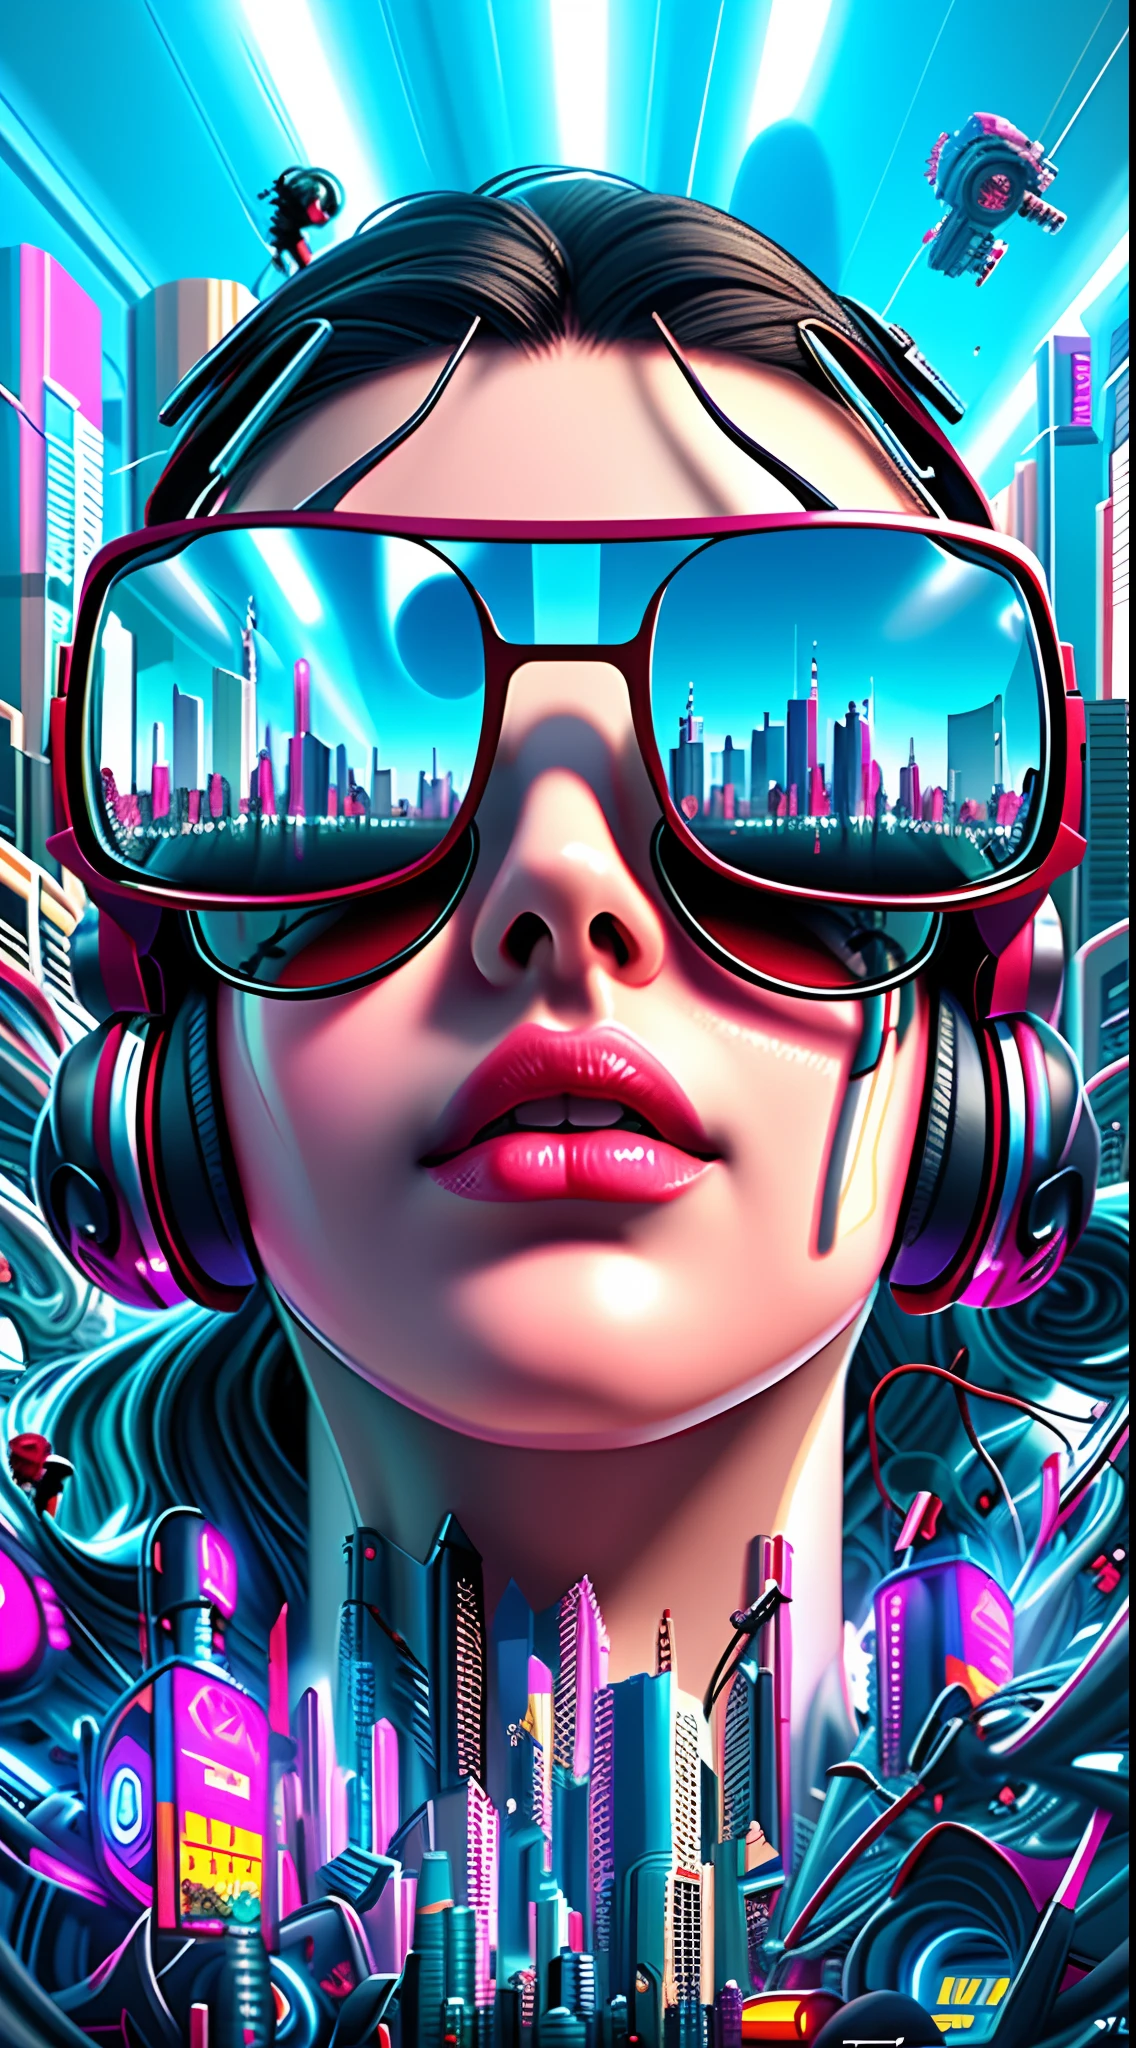 A woman with headphones and sunglasses in a futuristic city, Estilo de arte cyberpunk, Estilo de Arte futurista, cyberpunk vibes, Arte cyberpunk, cyberpunk cores vibrantes, cyberpunk themed art, advanced digital cyberpunk art, Estilo de arte cyberpunk, 3d arte digital 4k, sombreamento futurista, mas colorido, Arte futurista, no estilo cyberpunk, cyberpunk illustration, style hybrid mix of beeple, Arte Digital 4K